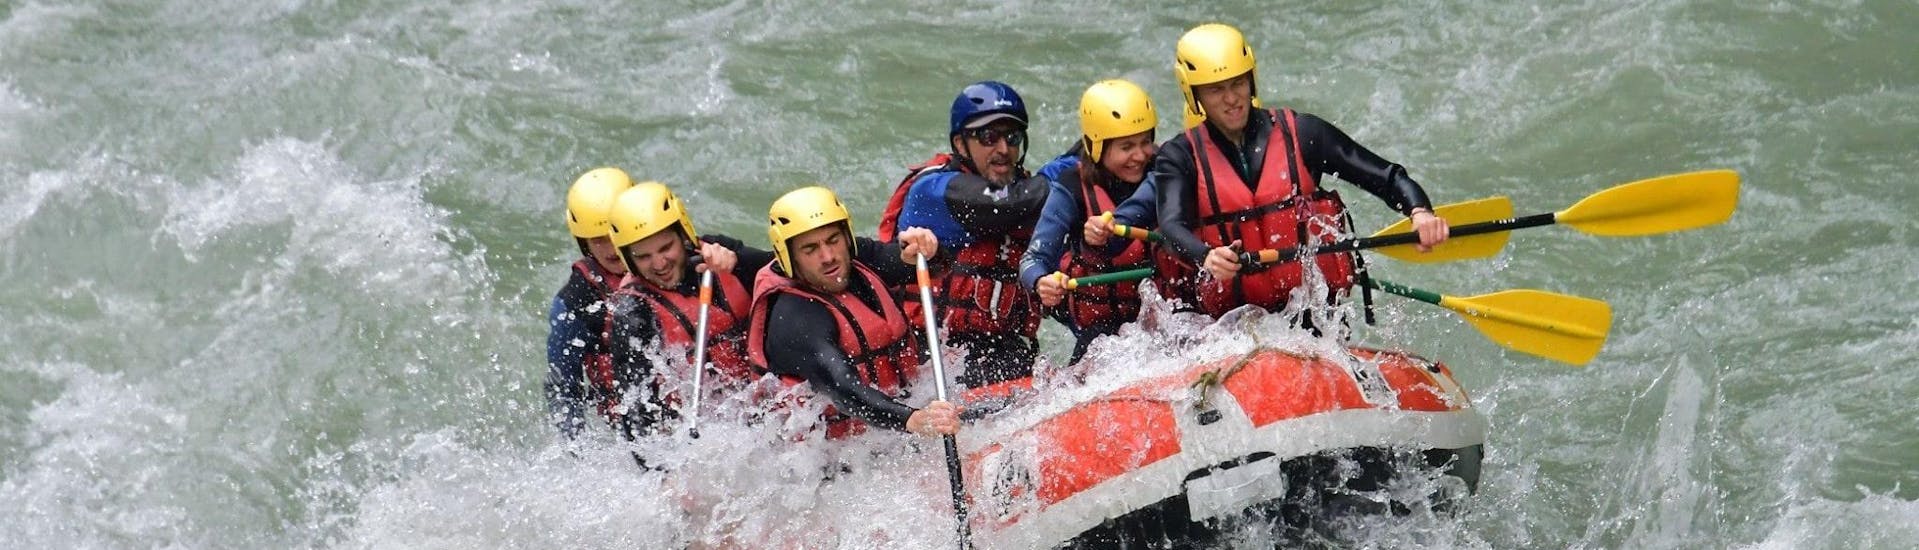 Un gruppo di amici sta affrontando alcune rapide sul fiume Dranse durante il giro di rafting di scoperta con 7 Aventures Savoie.